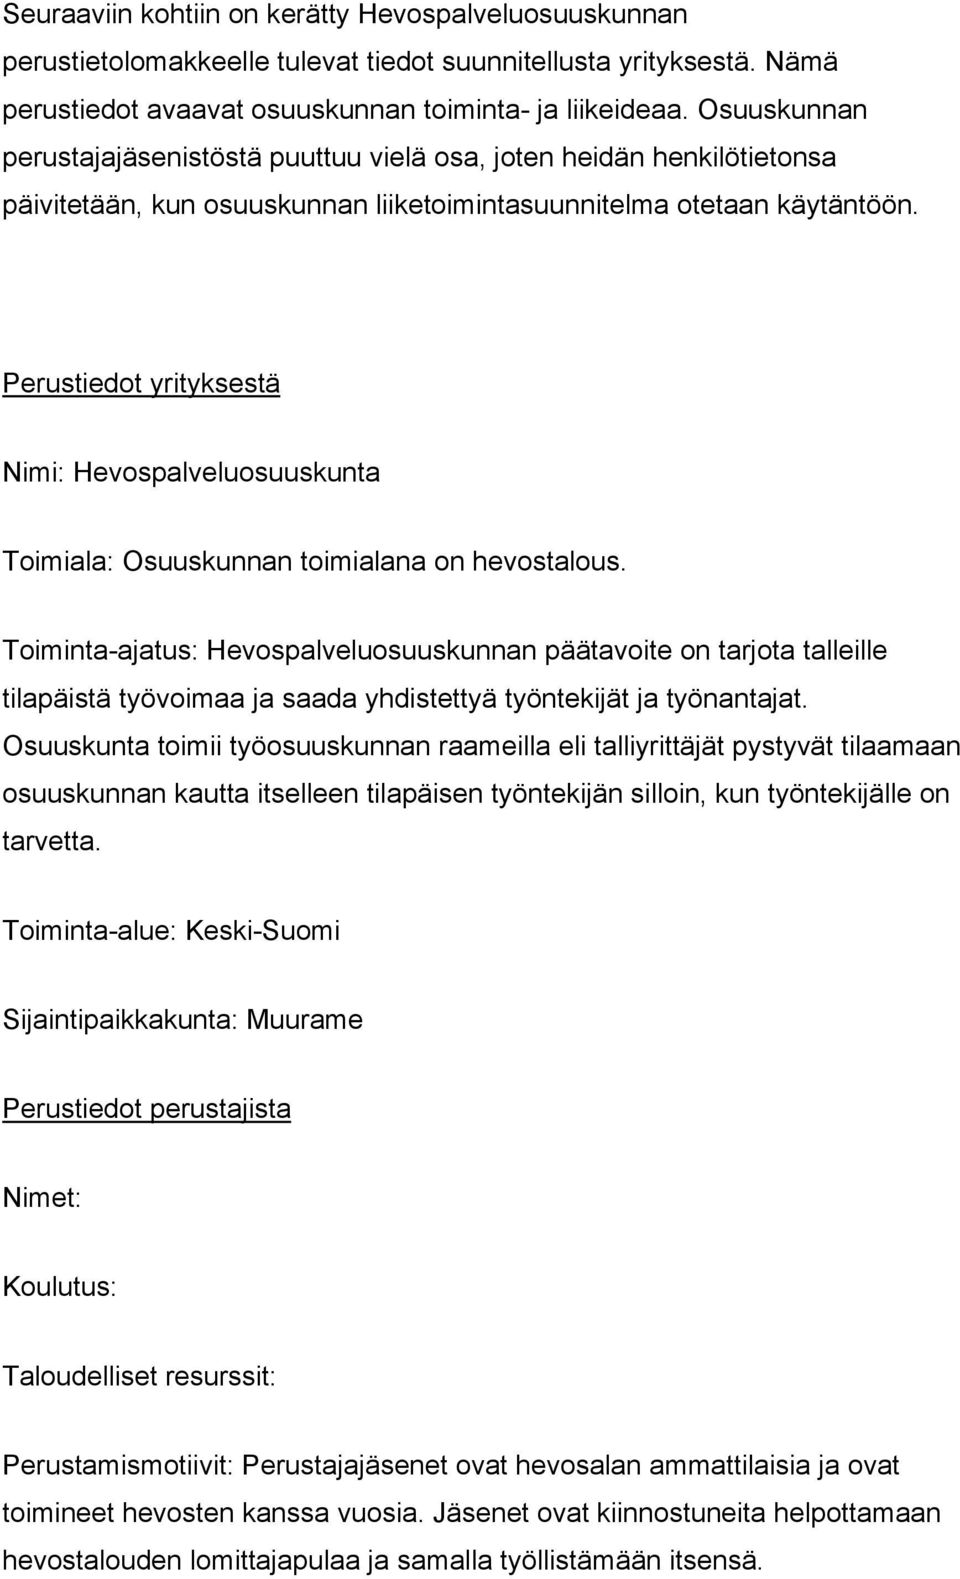 Perustiedot yrityksestä Nimi: Hevospalveluosuuskunta Toimiala: Osuuskunnan toimialana on hevostalous.